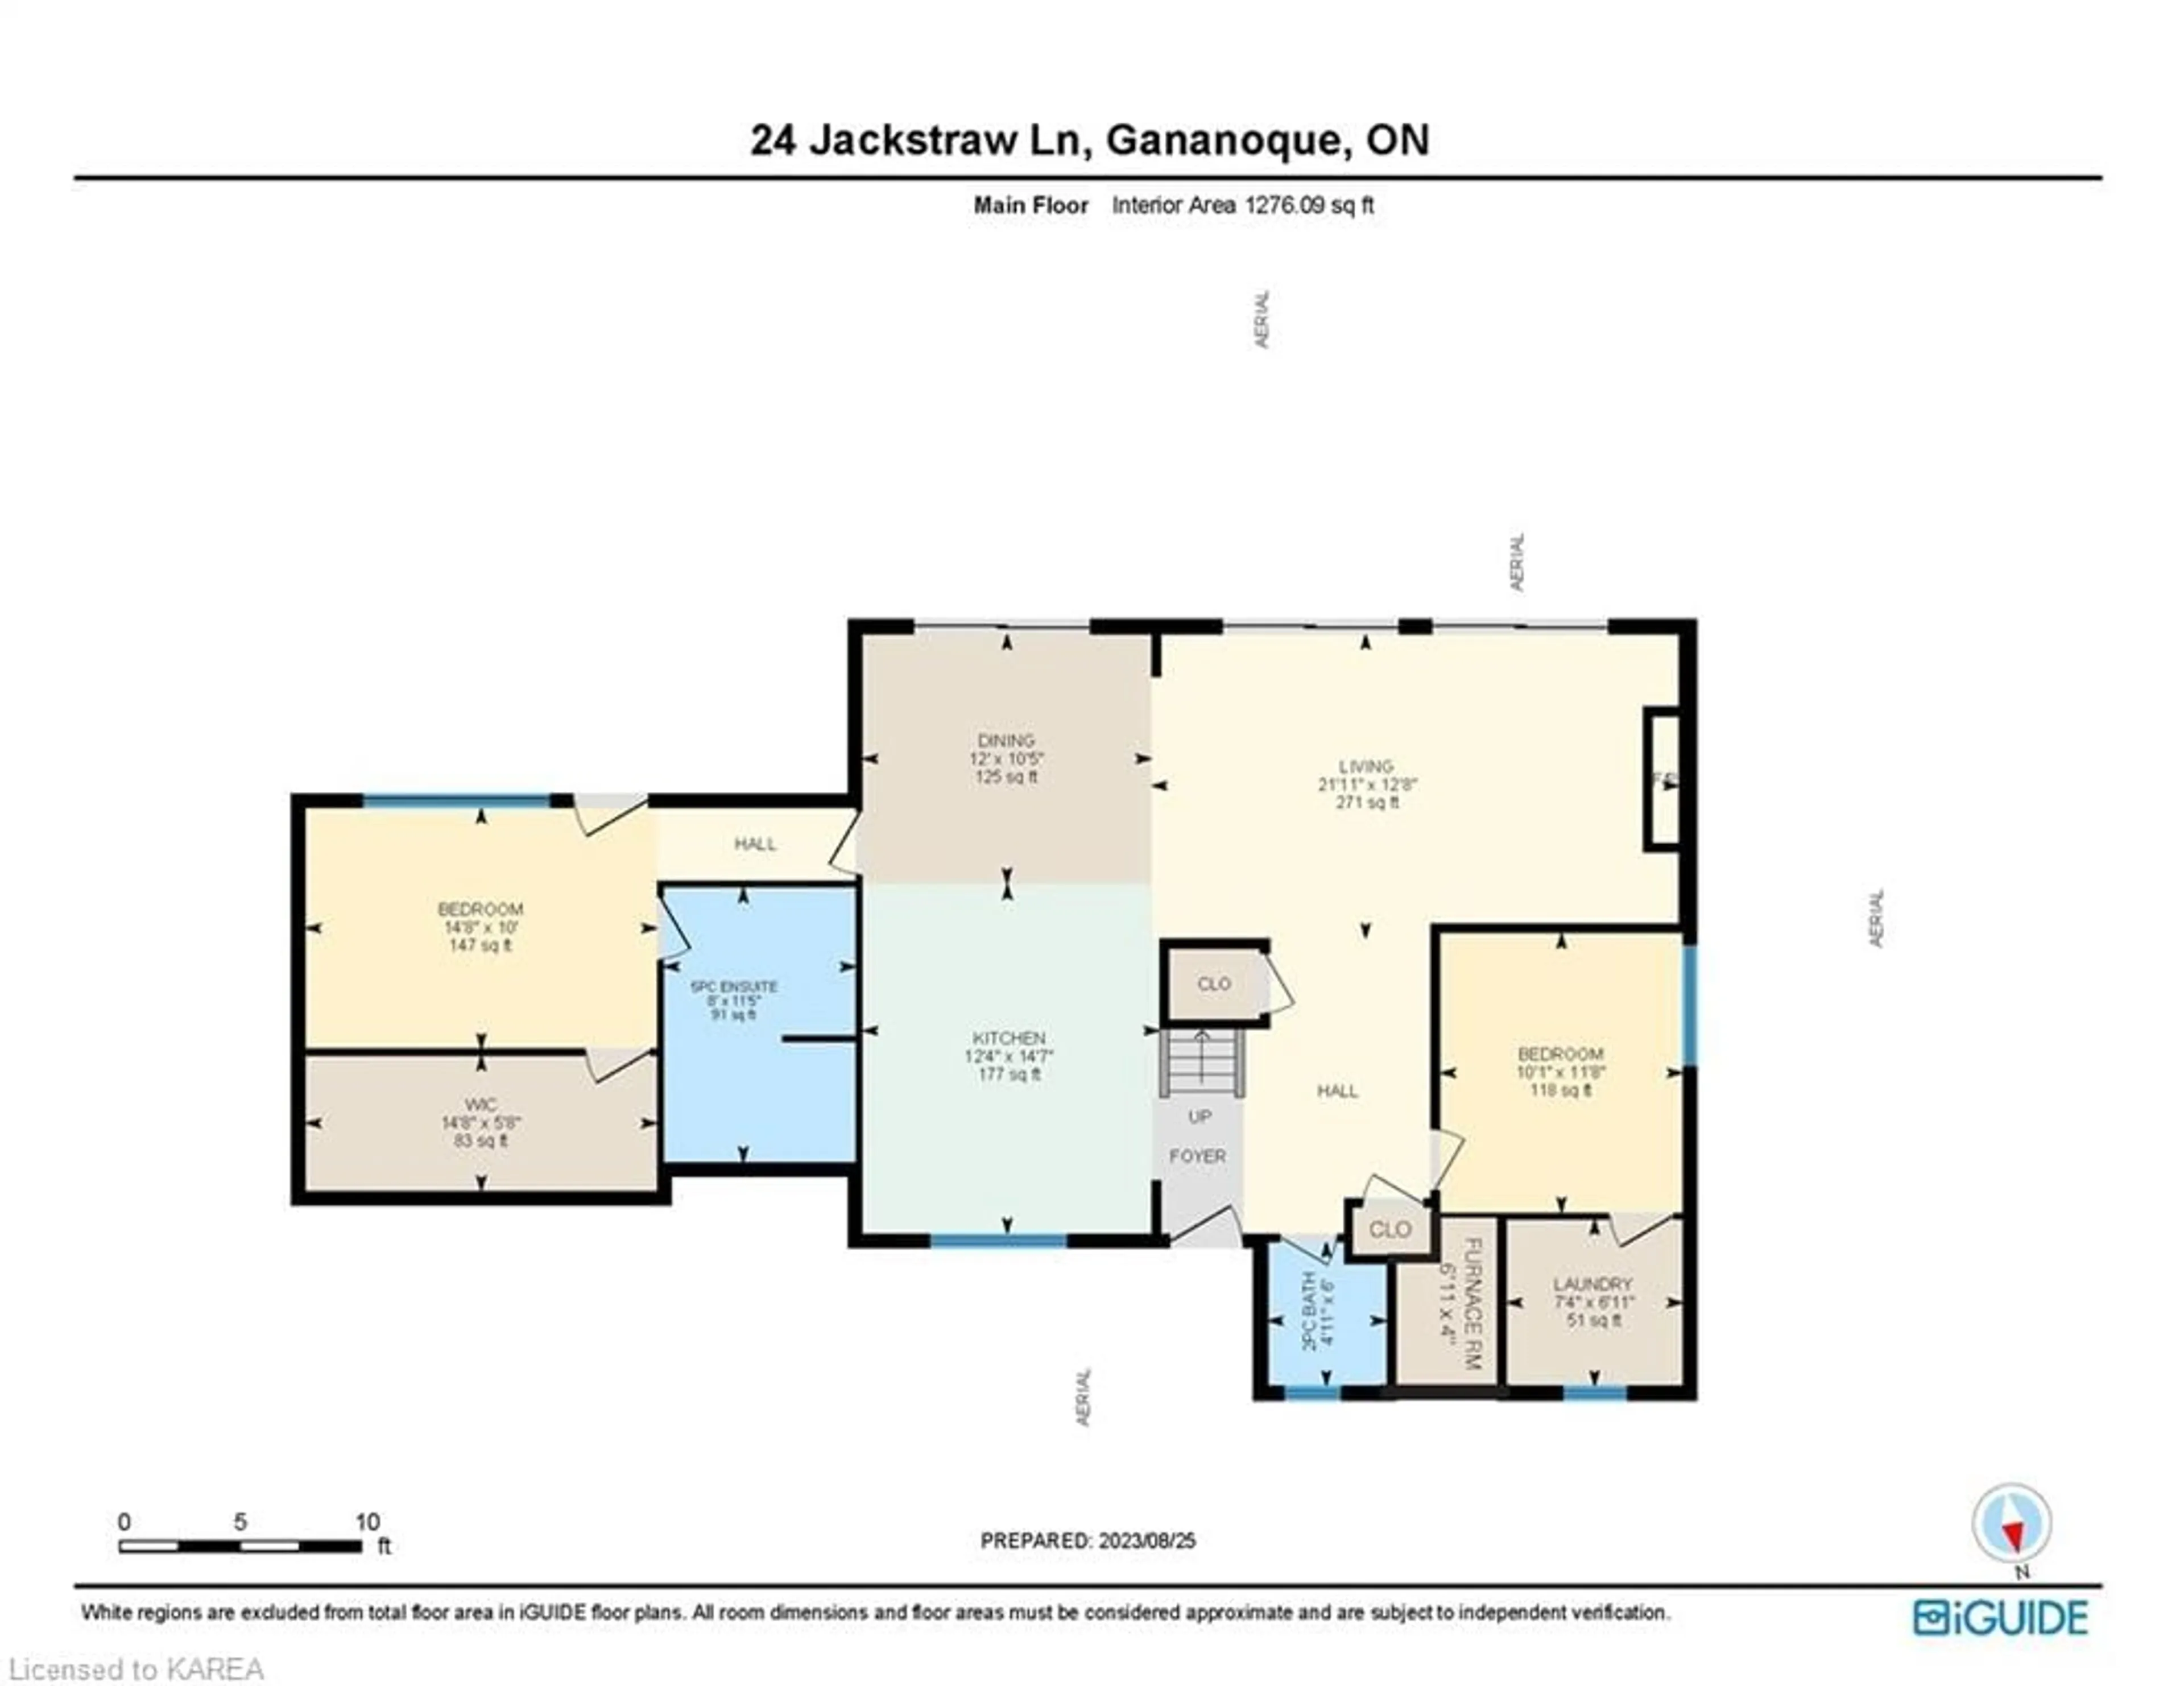 Floor plan for 24 Jackstraw Lane, Gananoque Ontario K7G 2V4